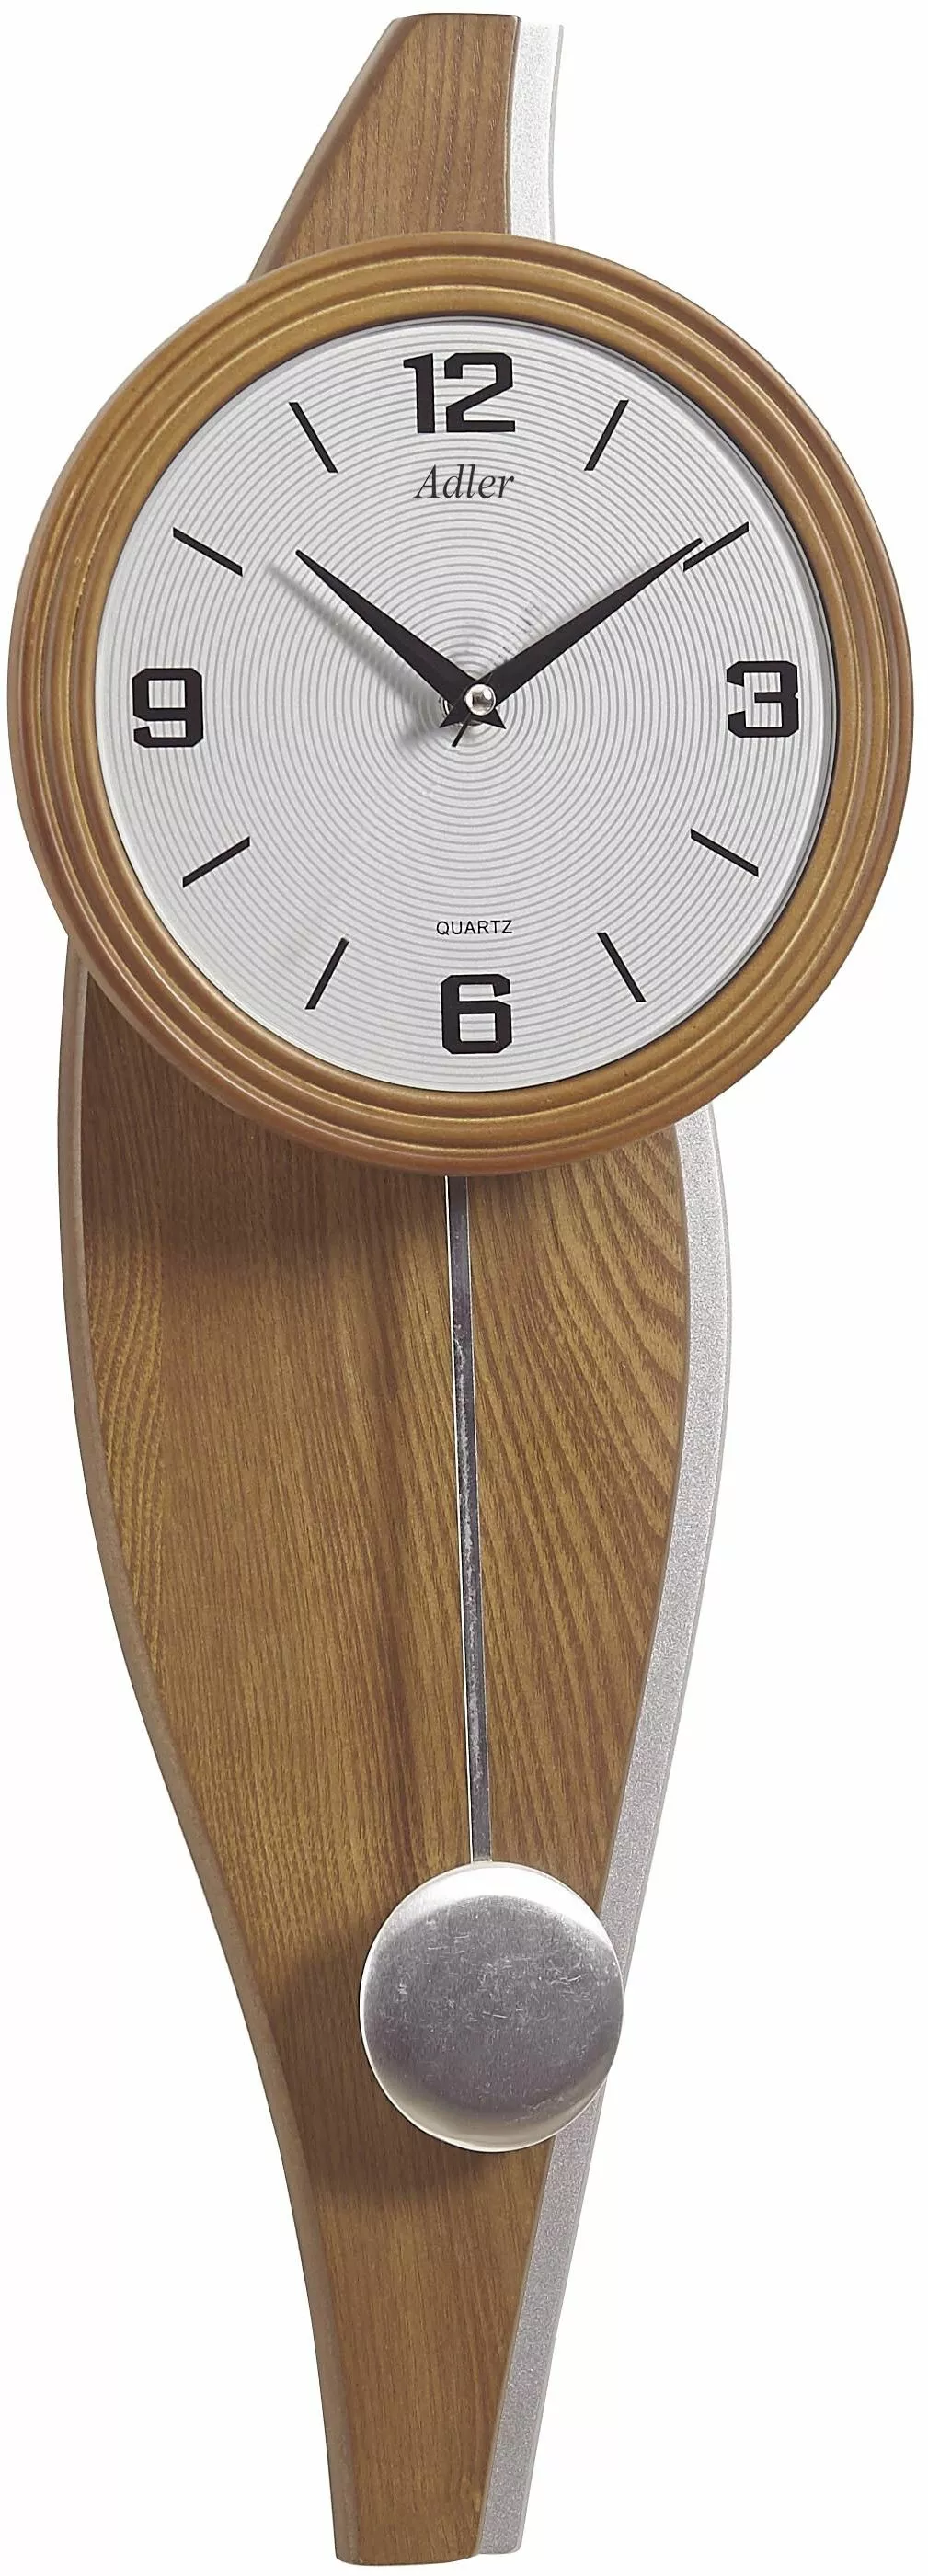 zegar wiszacy drewniany z wahadlem adler 20248